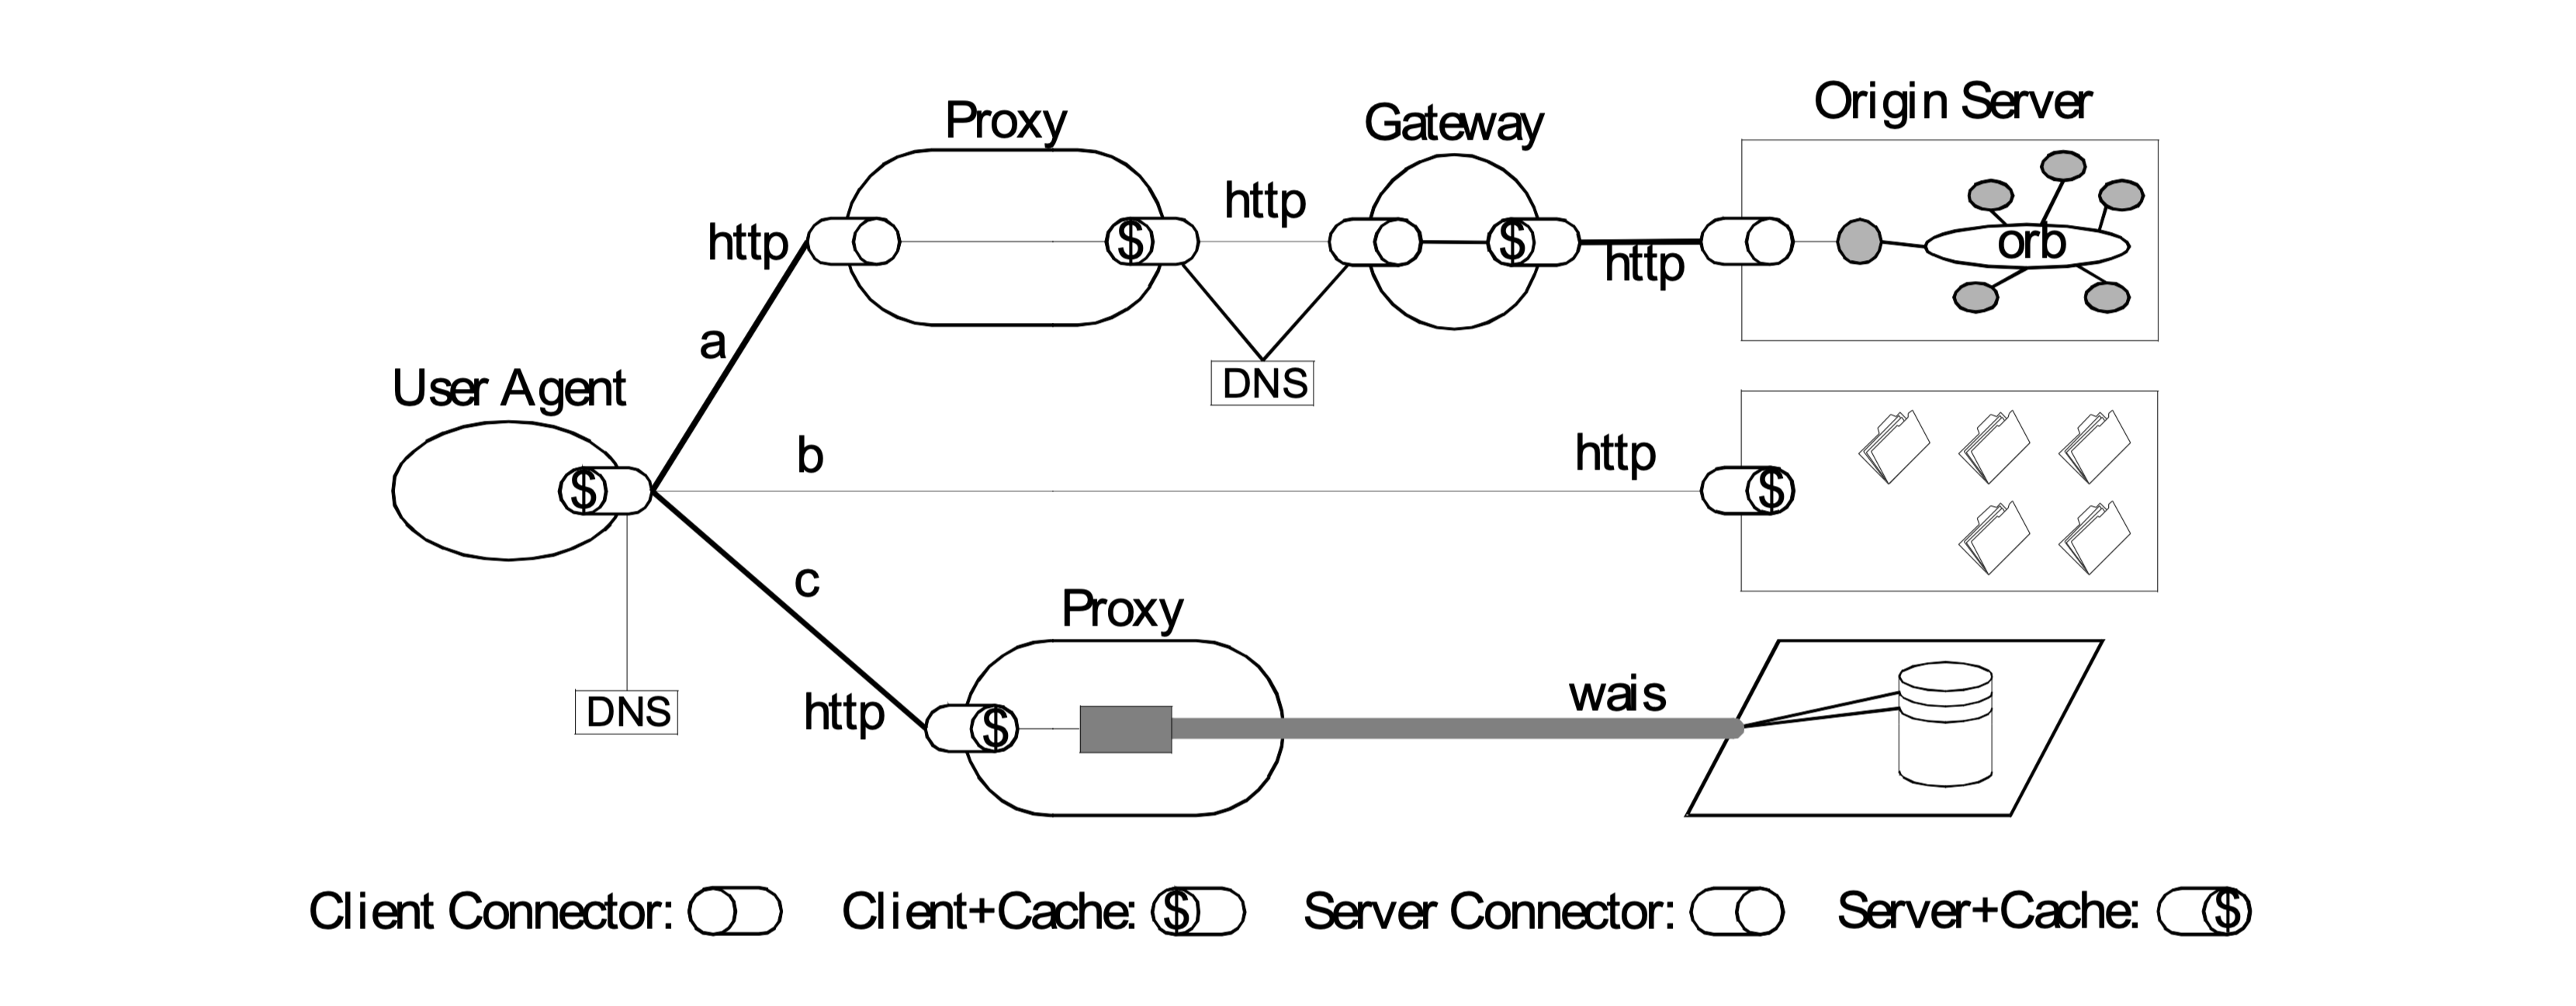 图 3：一个基于 REST 的架构的过程视图